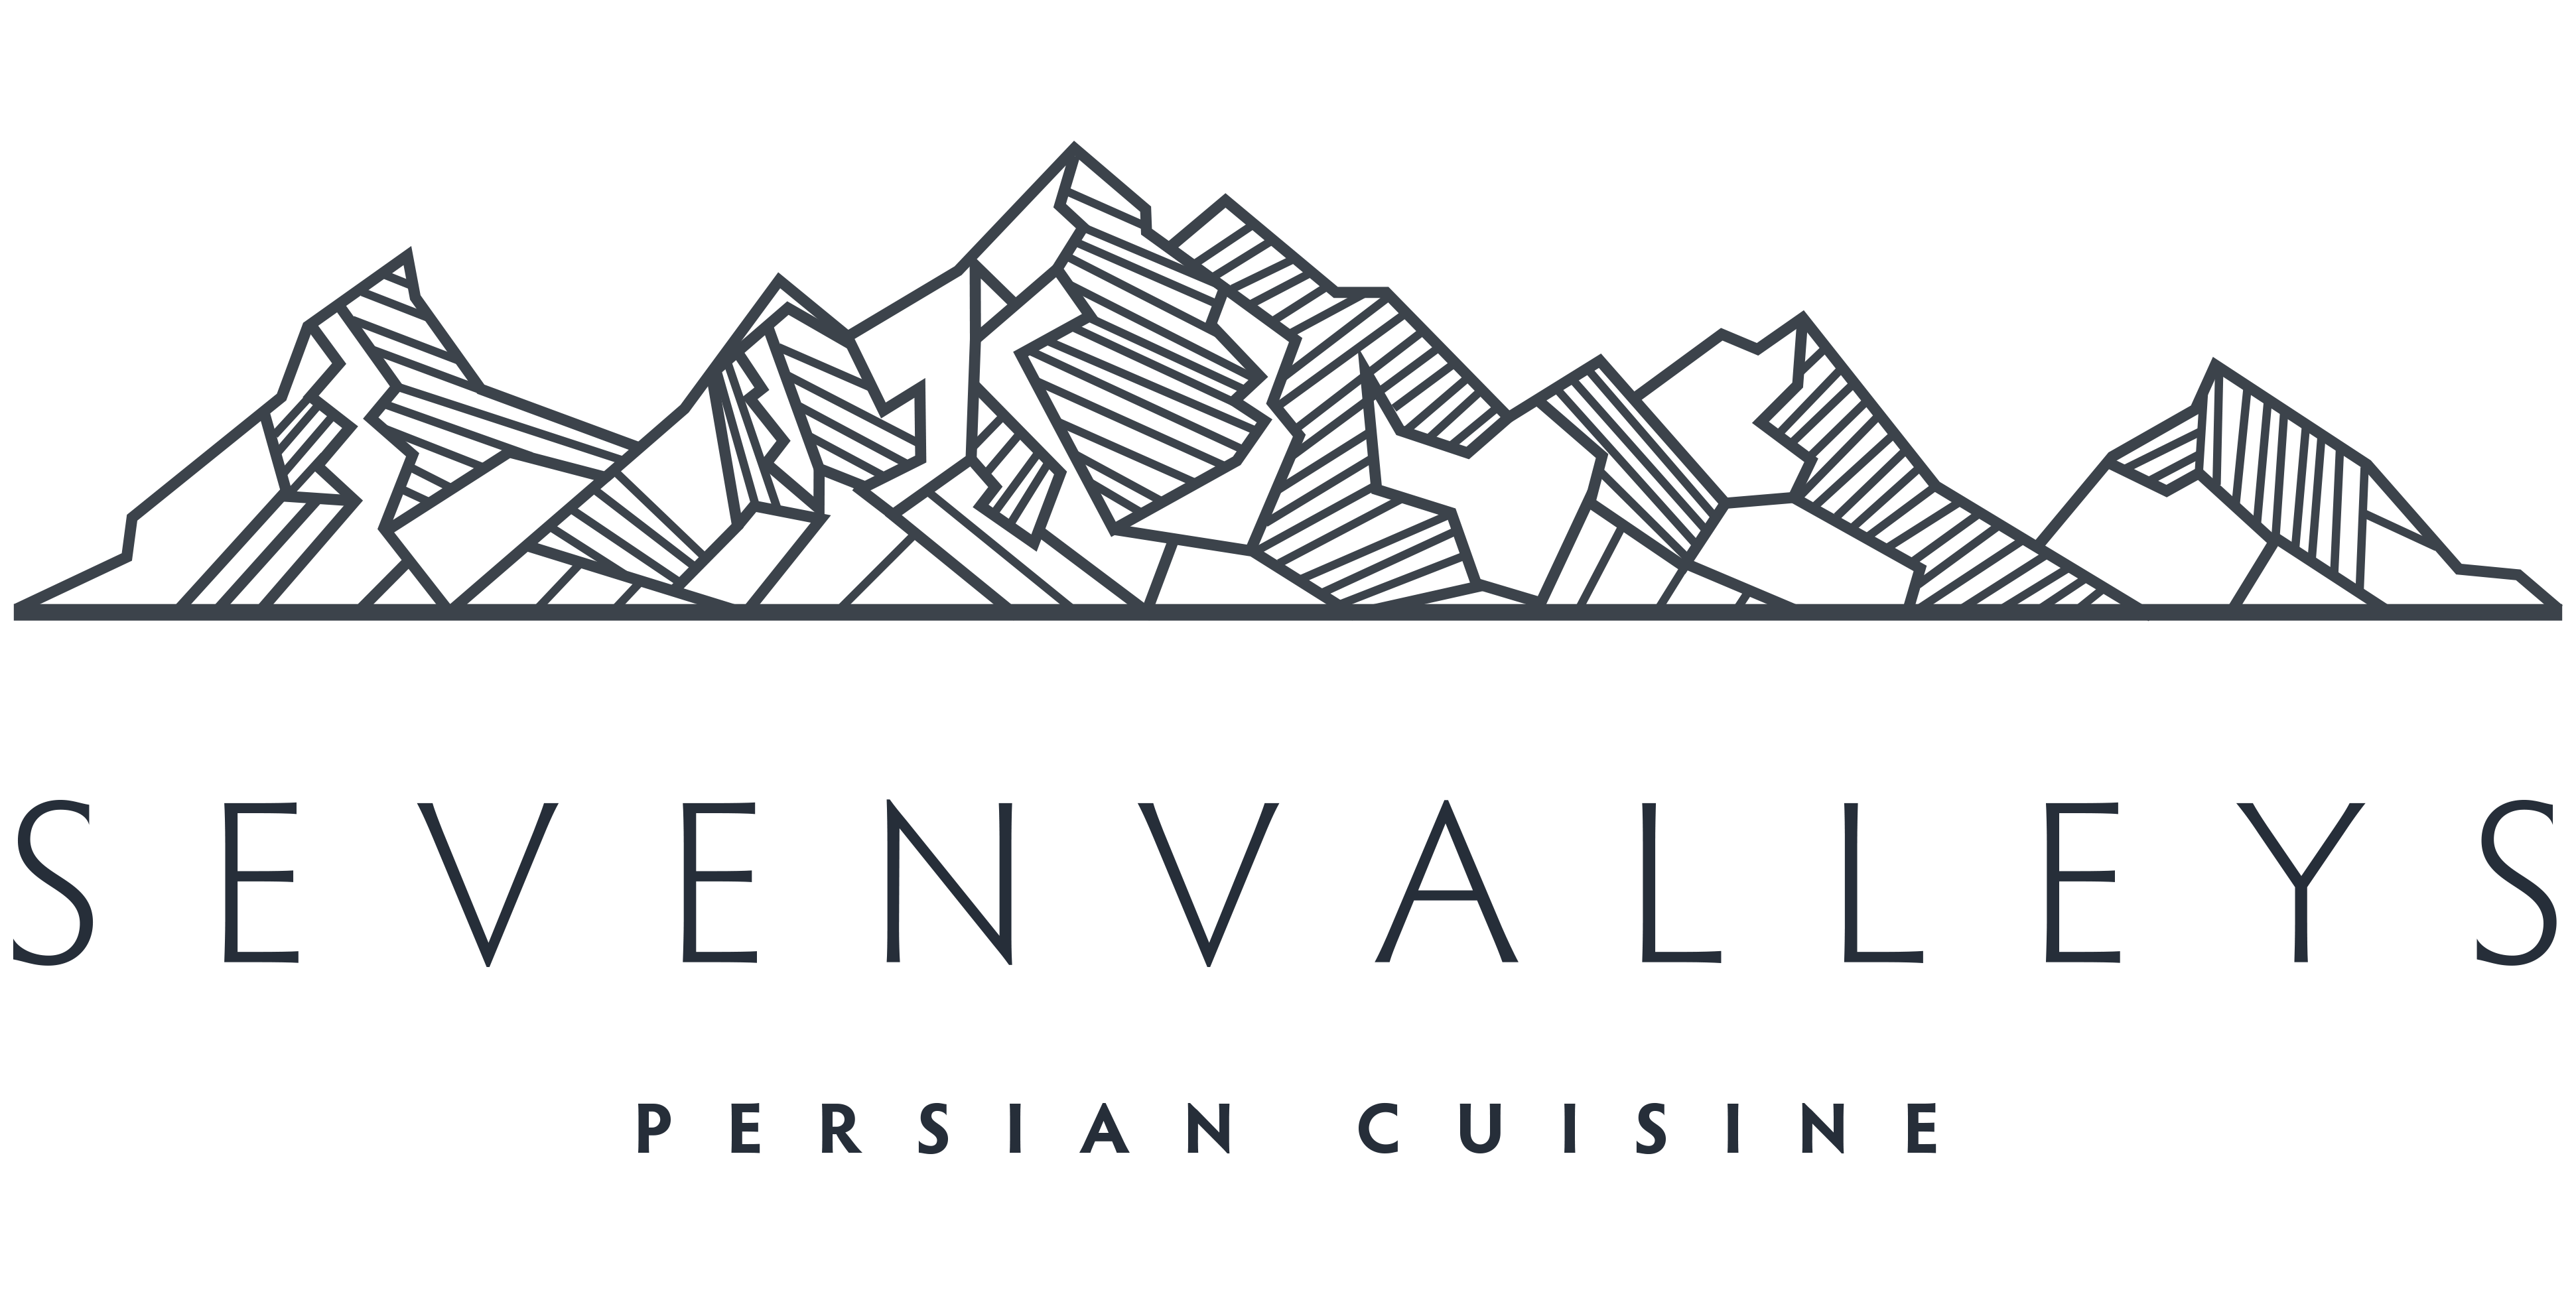 Seven Valleys Restaurant